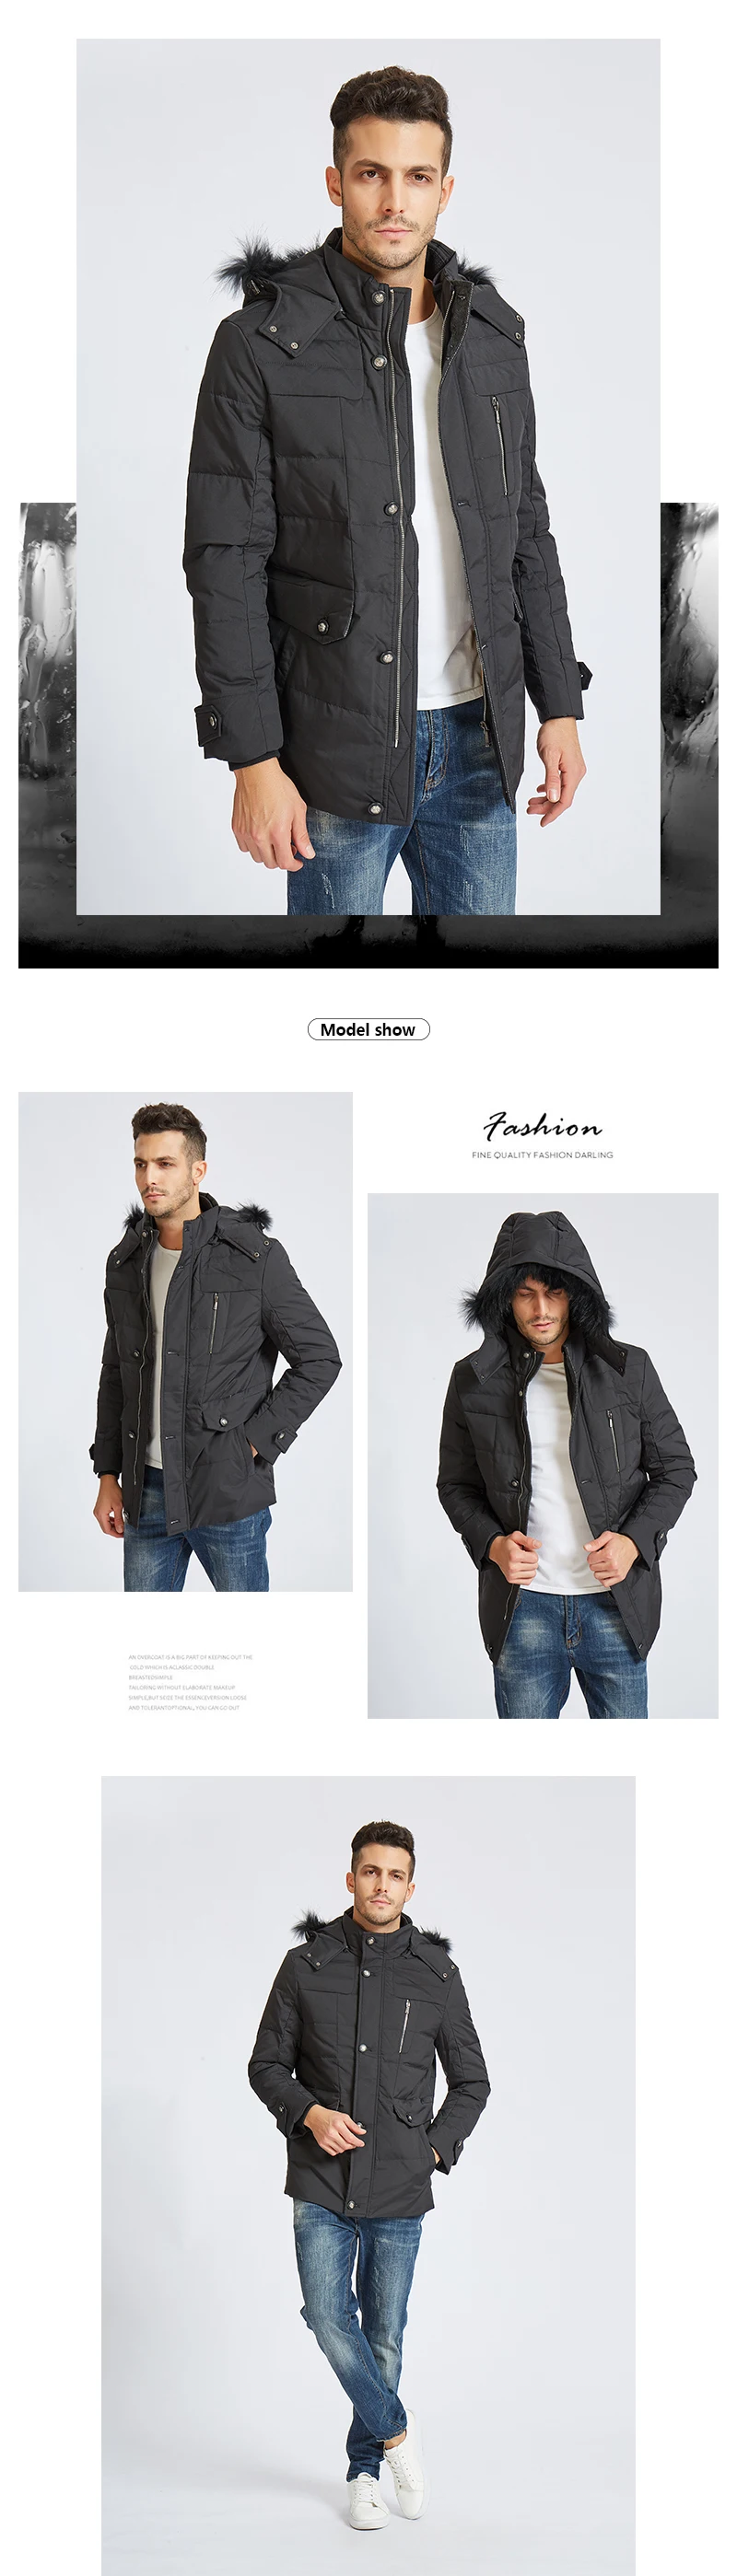 2018 новый бренд одежды Куртки толстые теплые мужчин пуховая куртка высокого качества меховой воротник с капюшоном пуховая куртка зимняя